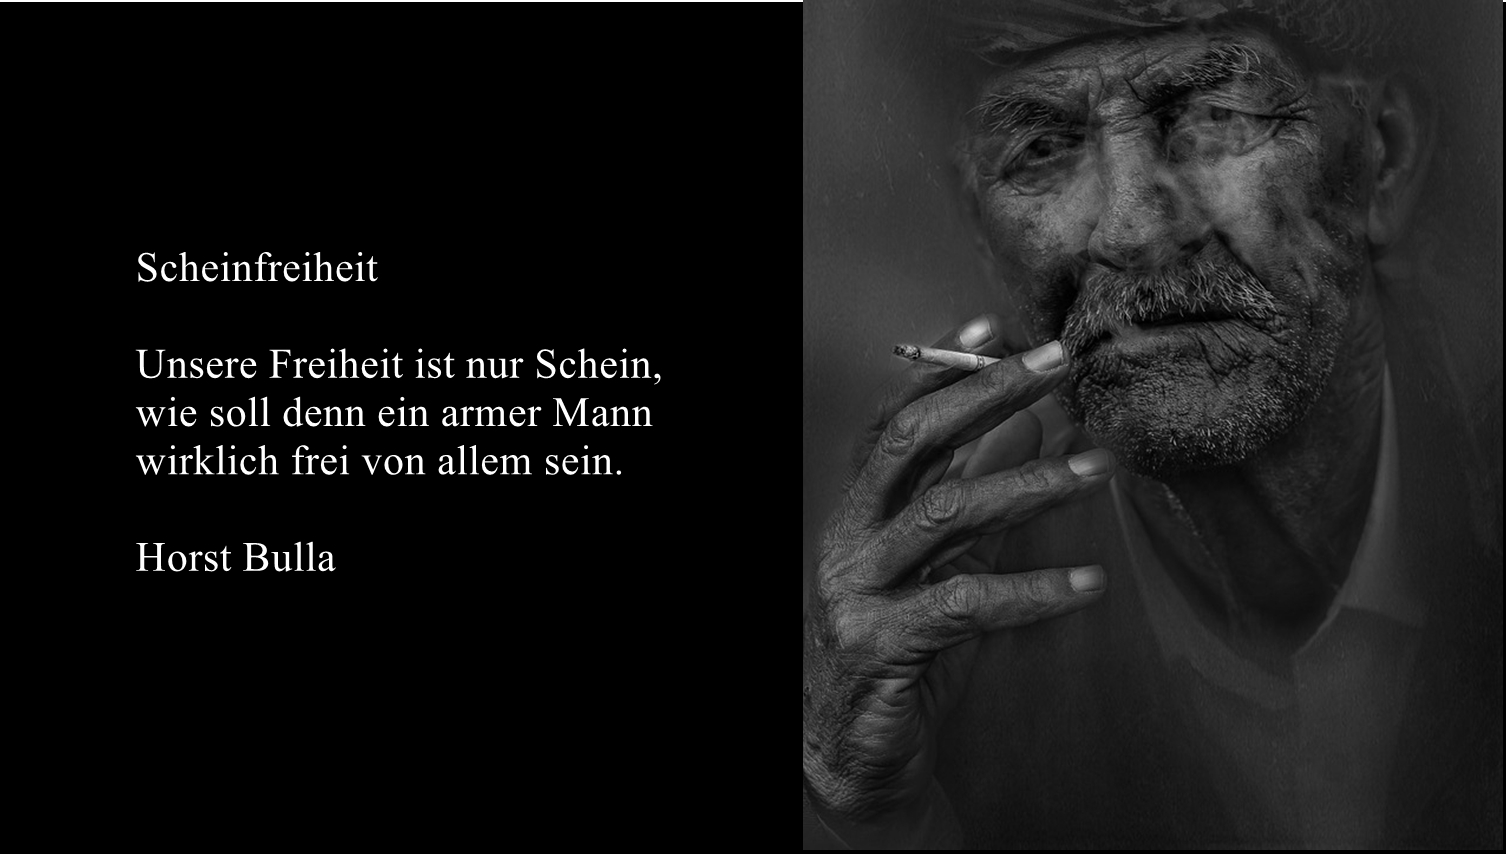 Bildgedicht: Gedicht, Scheinfreiheit von Horst Bulla